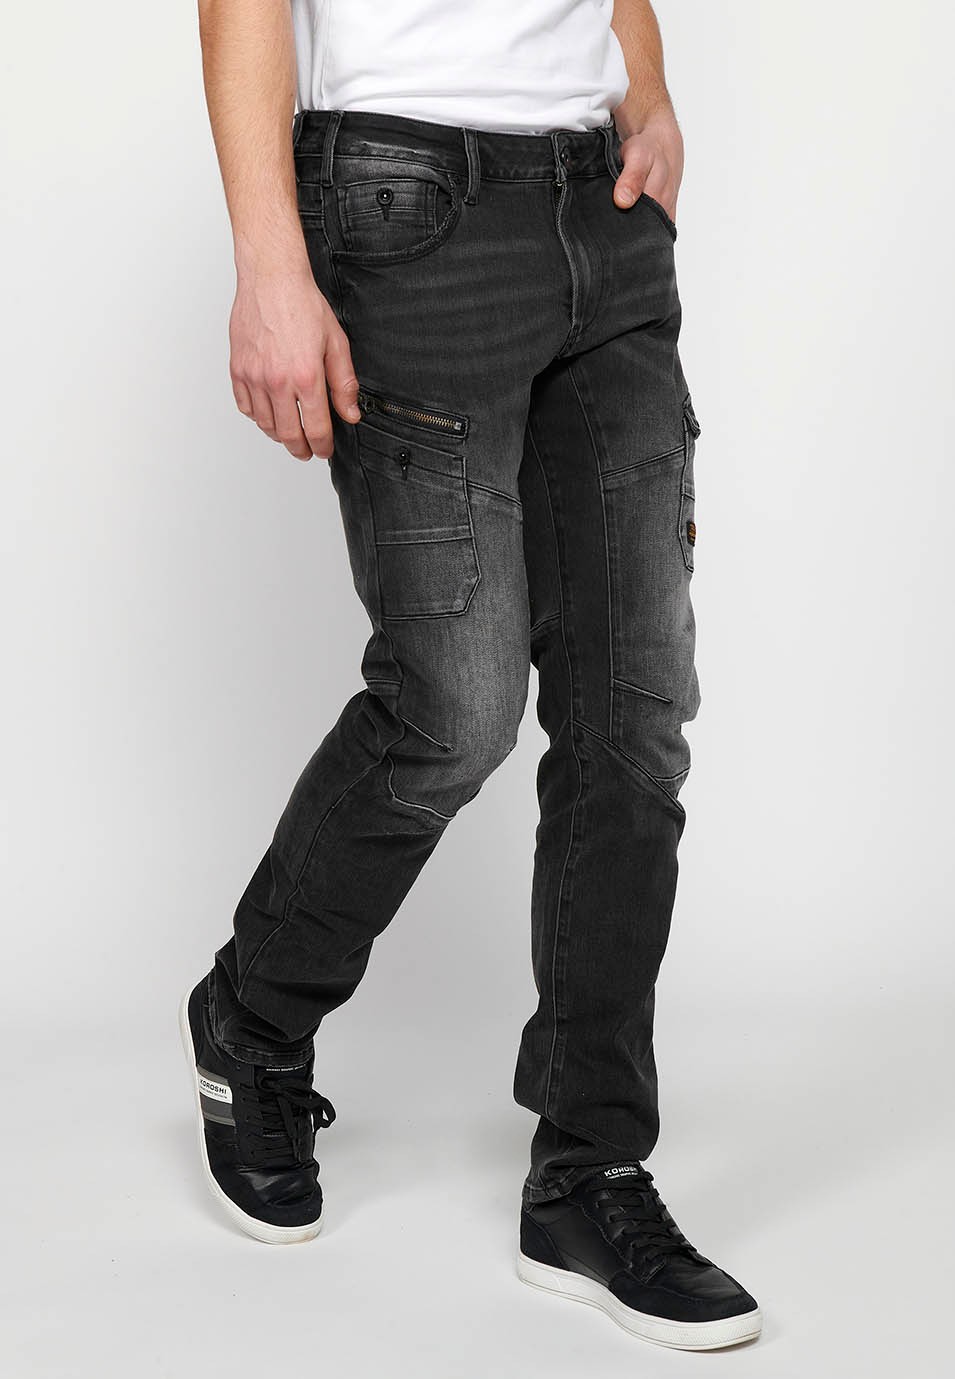 Pantalons llargs denim amb Tancament davanter amb cremallera i botó i Butxaques, dos laterals de Color Negre per a Home 2